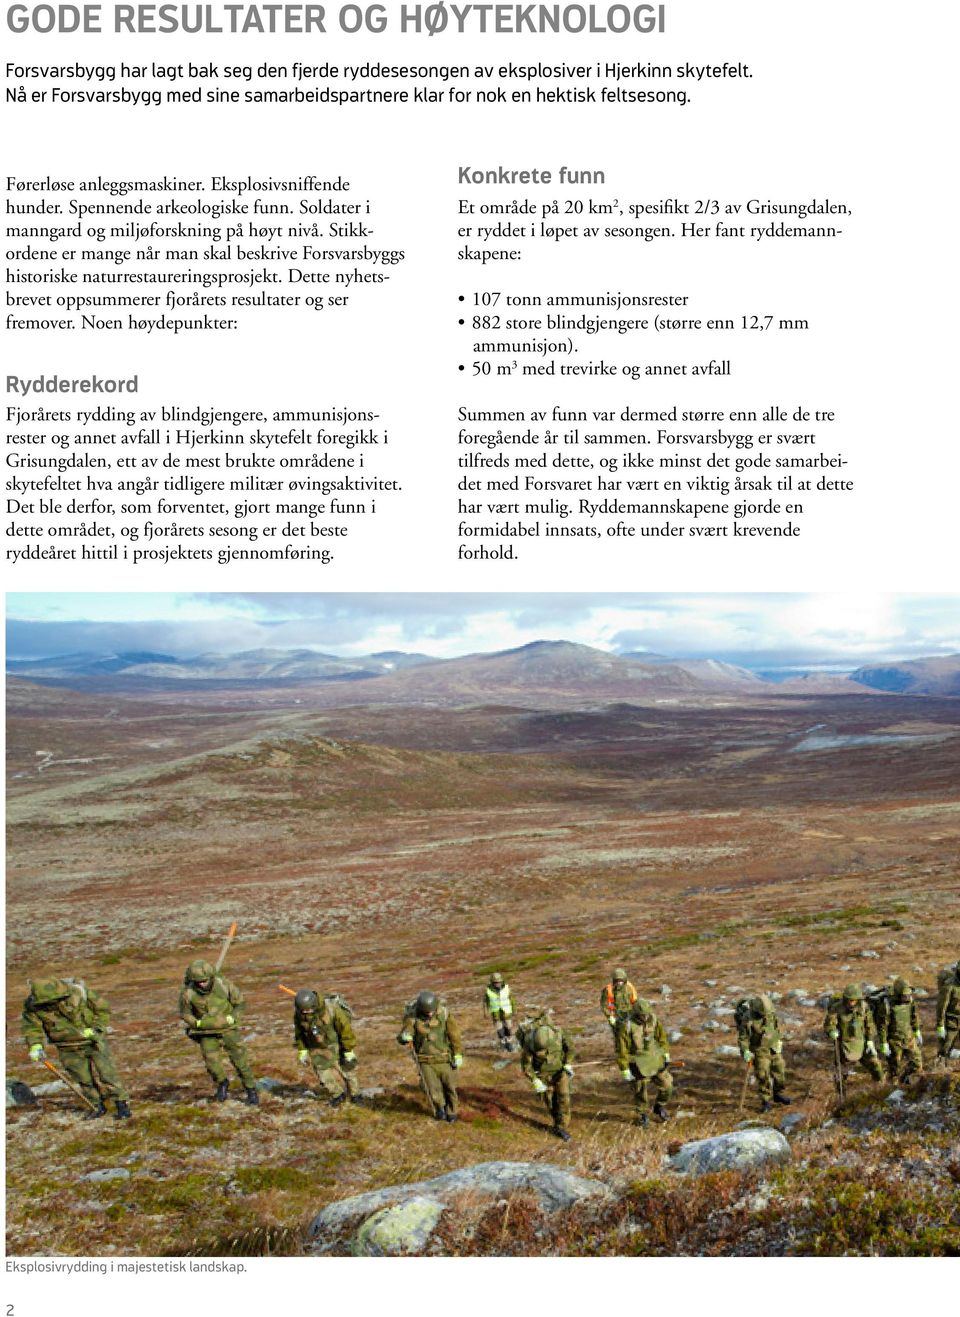 Soldater i manngard og miljøforskning på høyt nivå. Stikkordene er mange når man skal beskrive Forsvarsbyggs historiske naturrestaureringsprosjekt.